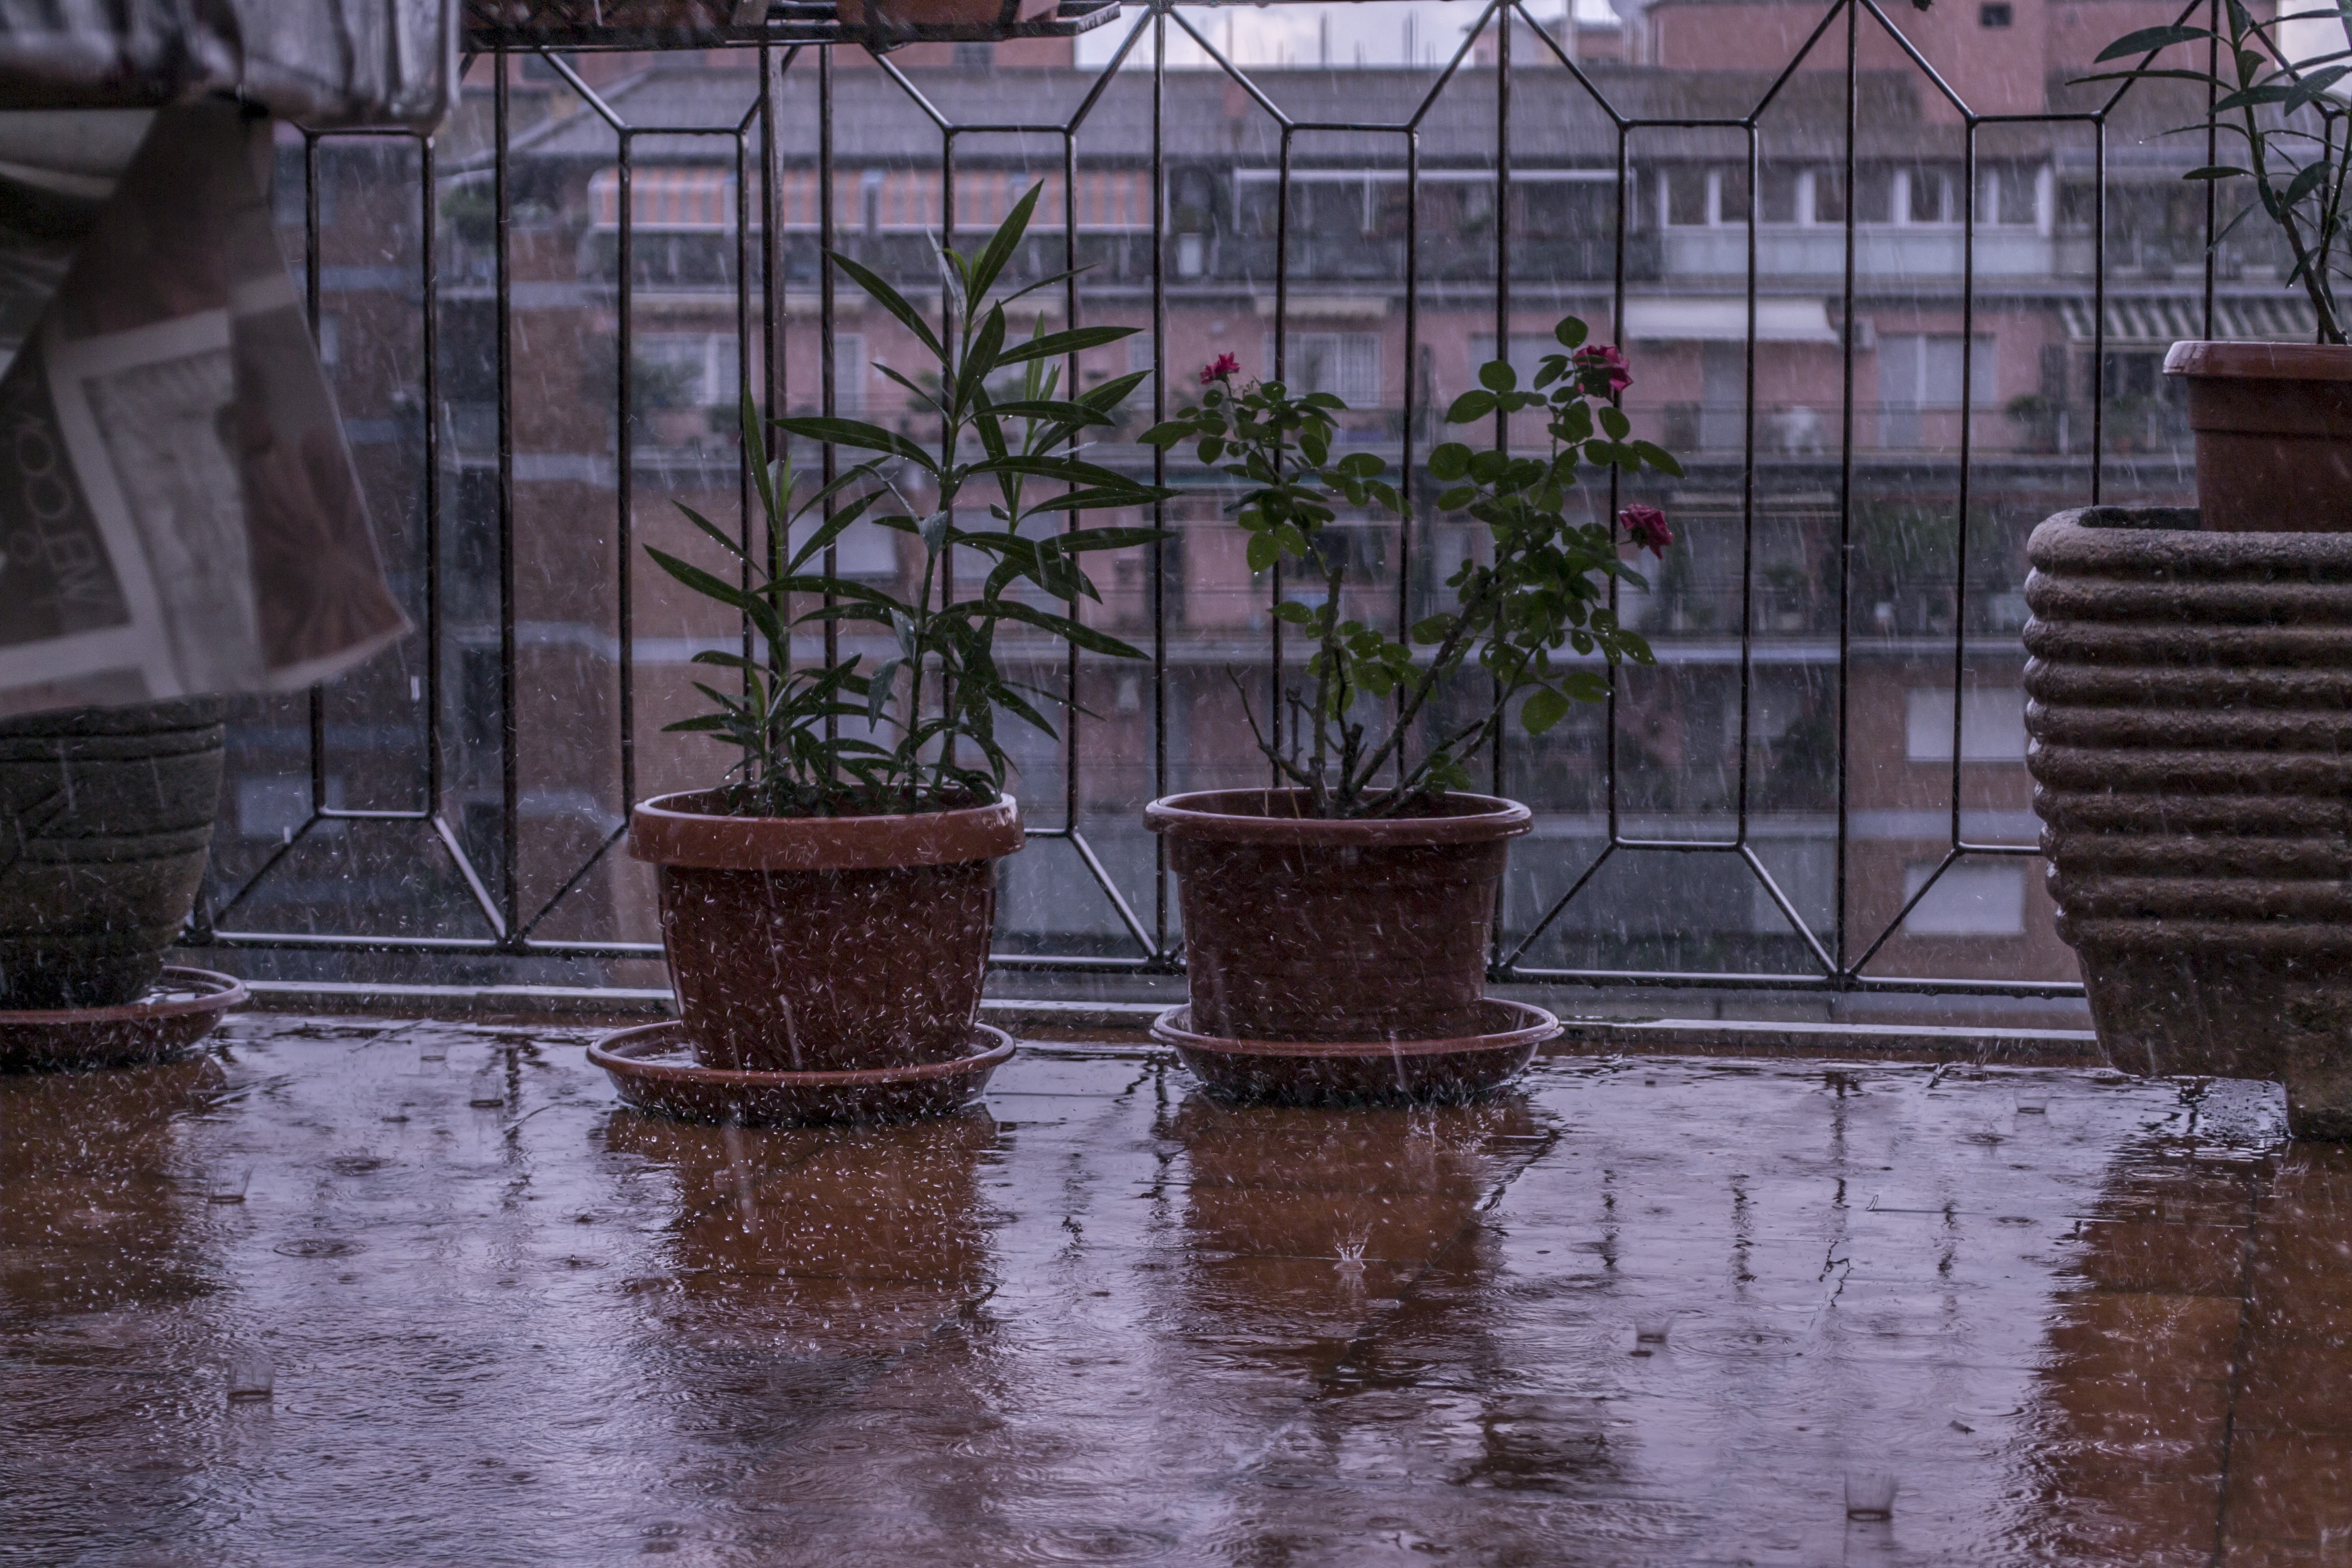 Rainy Day On My Balcony